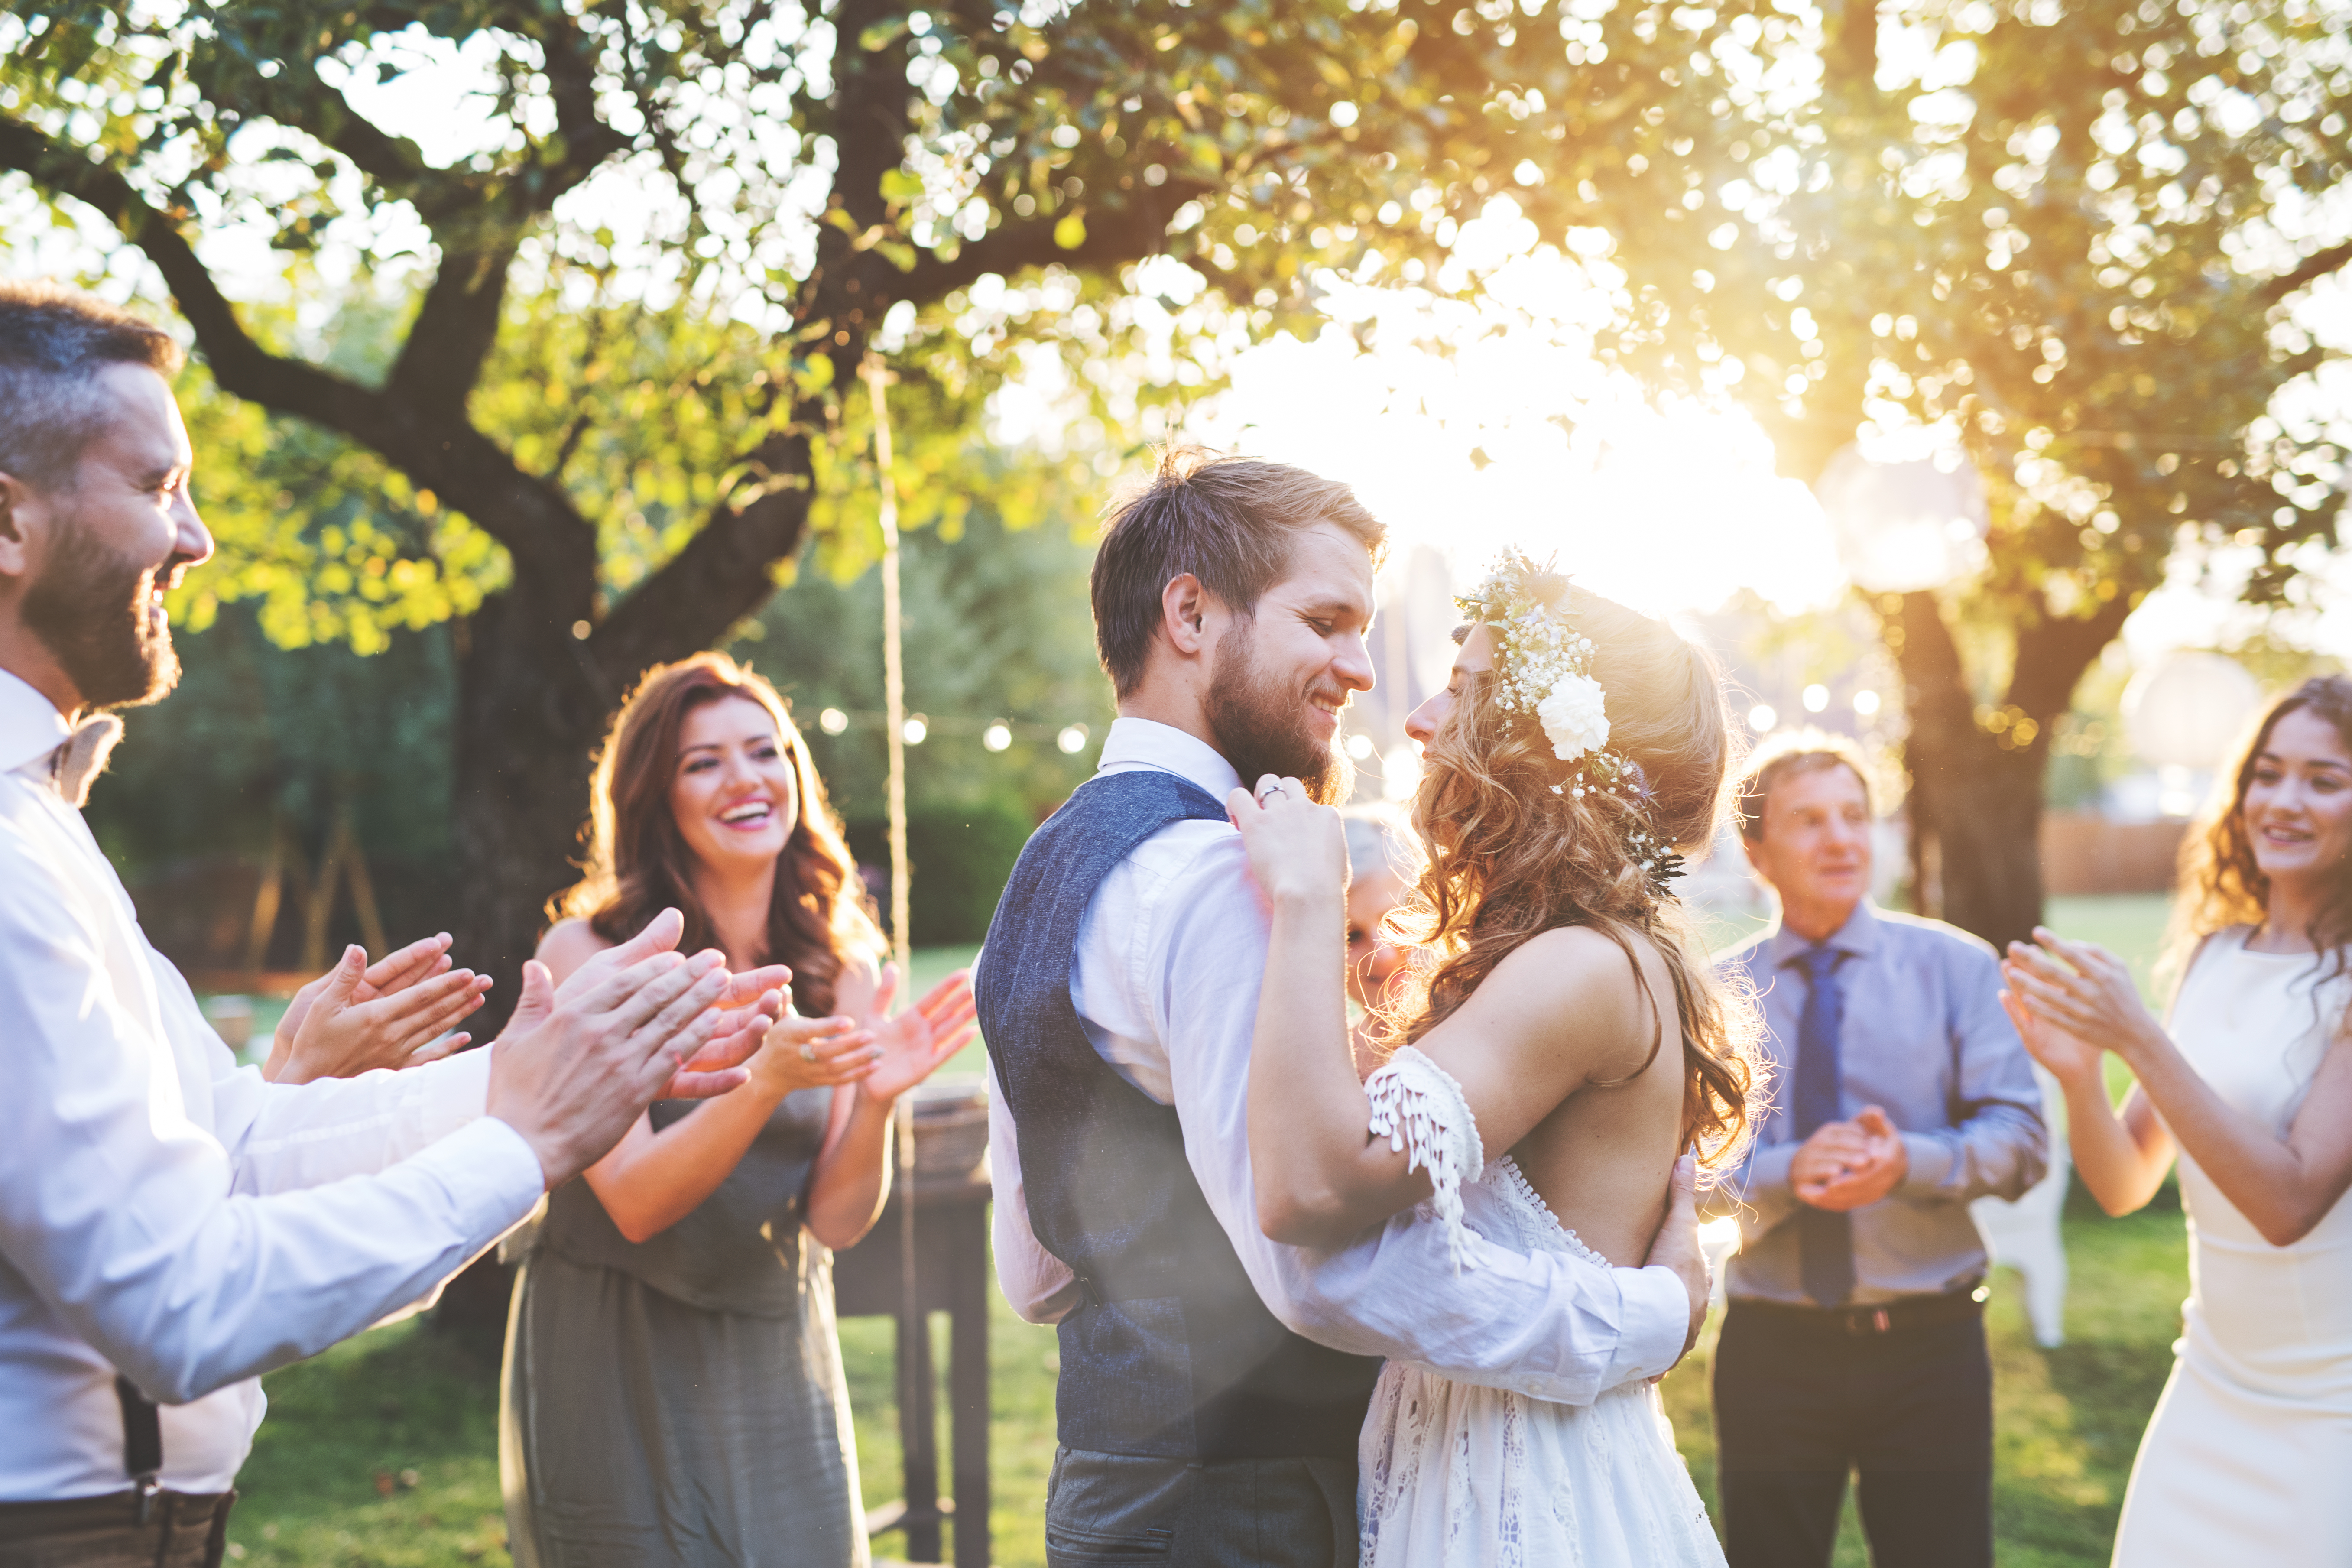 Novios bailando en su boda | Fuente: Shutterstock